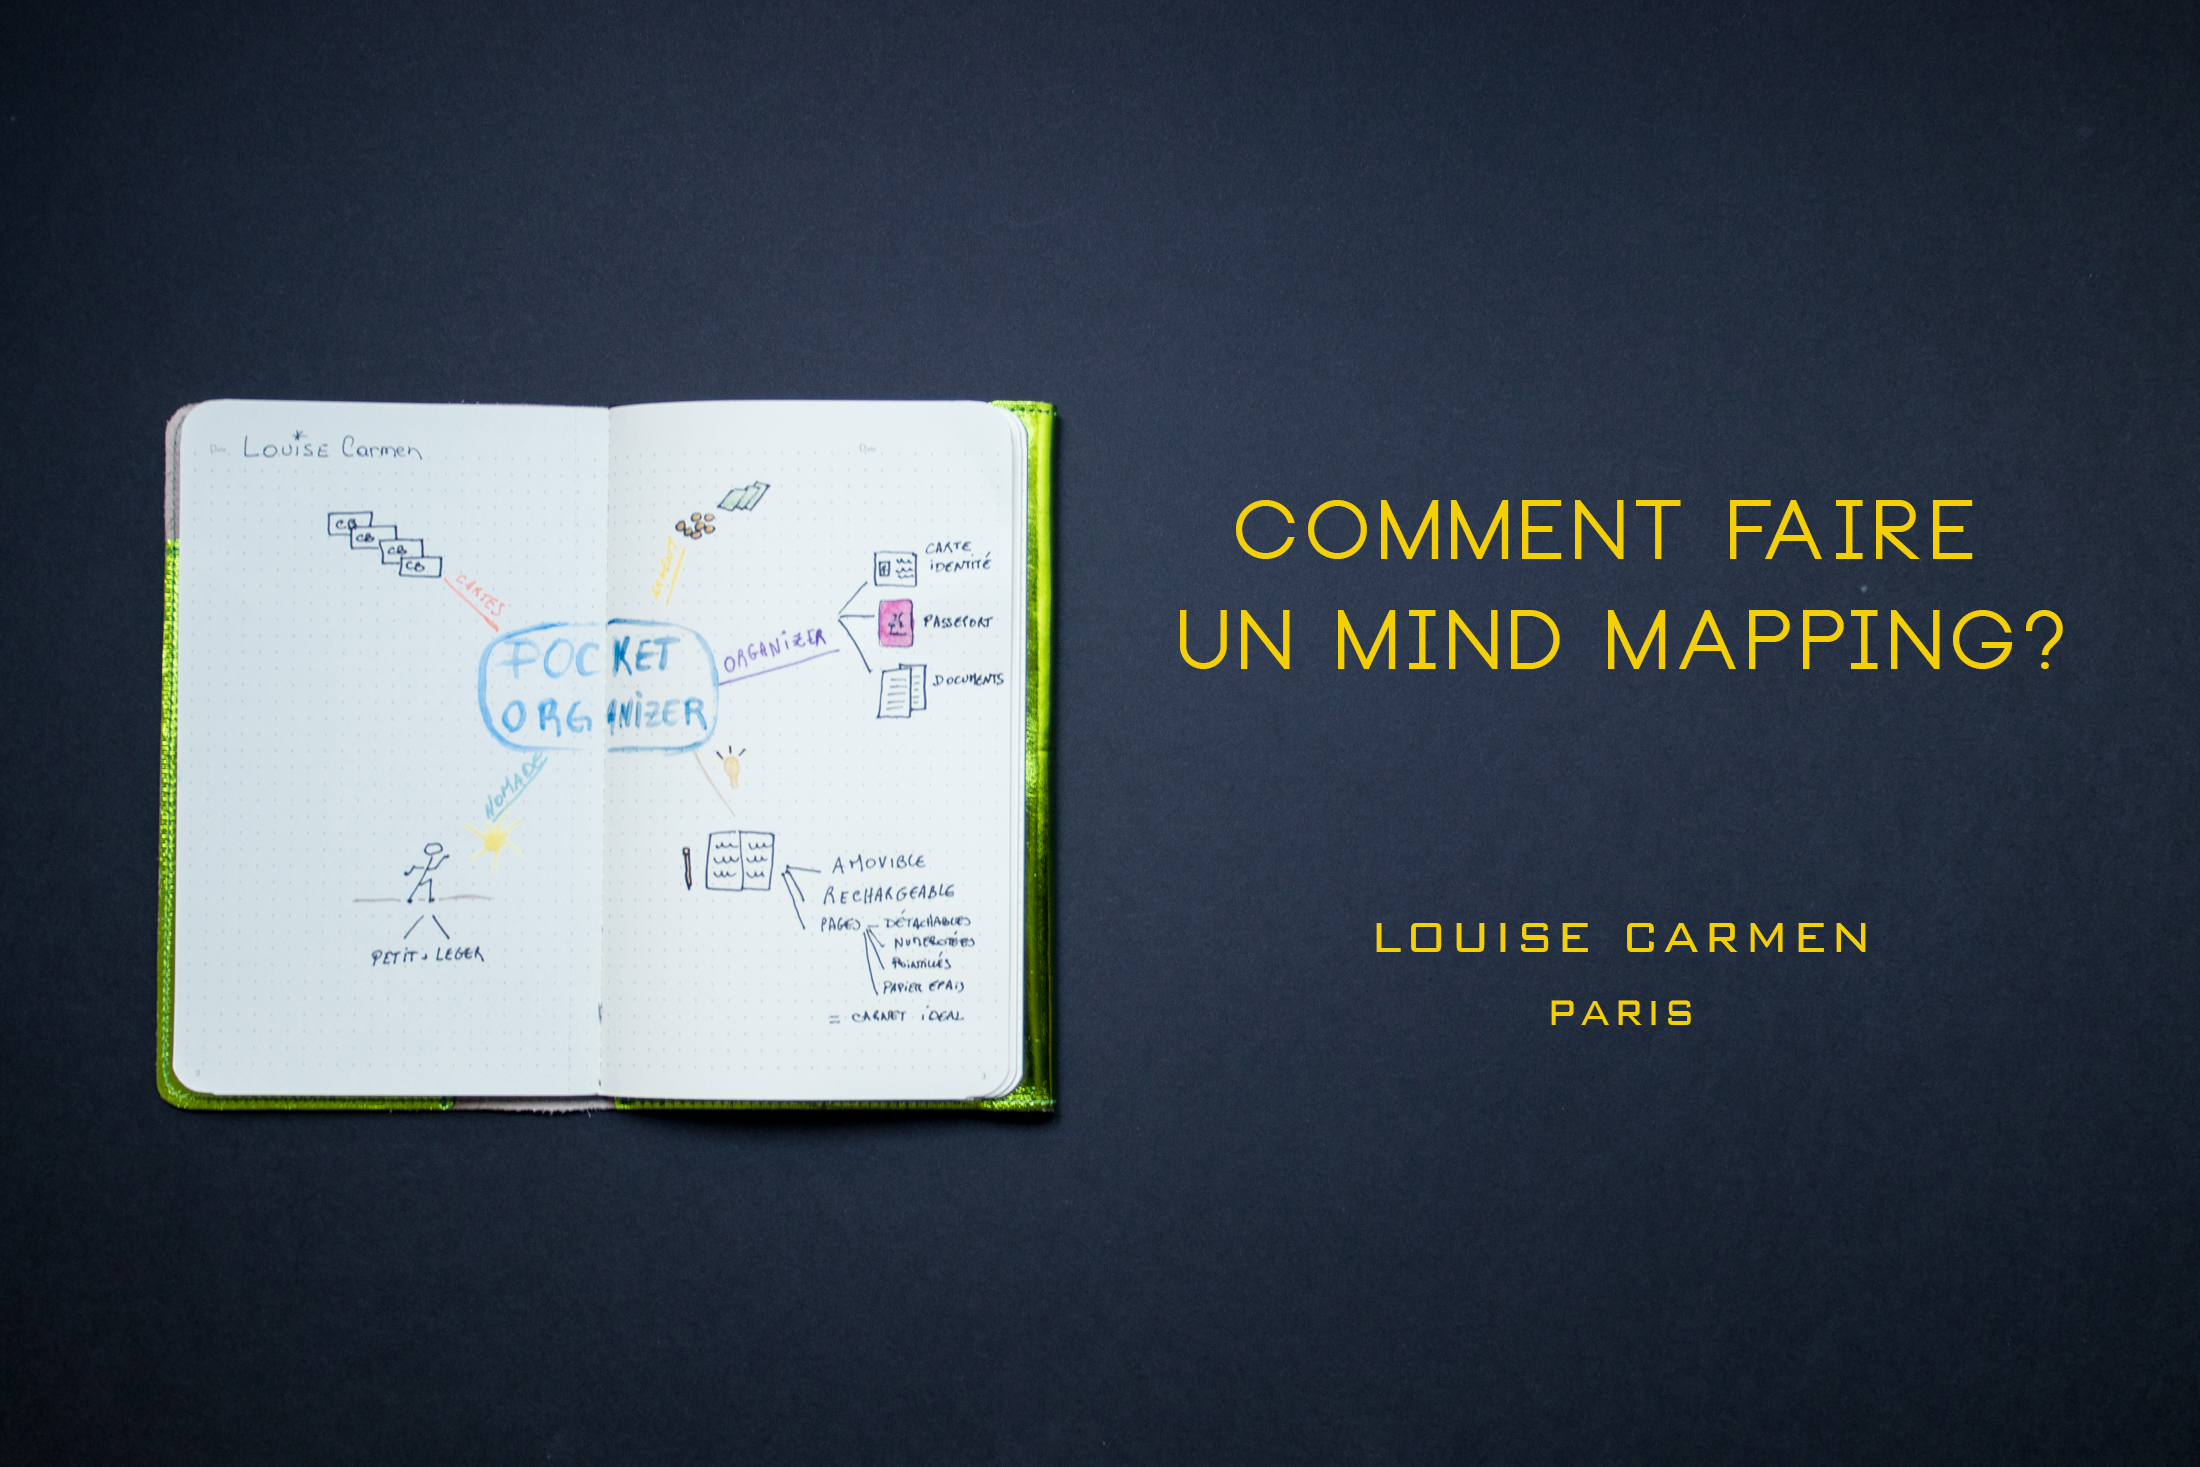 Louise Carmen, comment faire un mind mapping